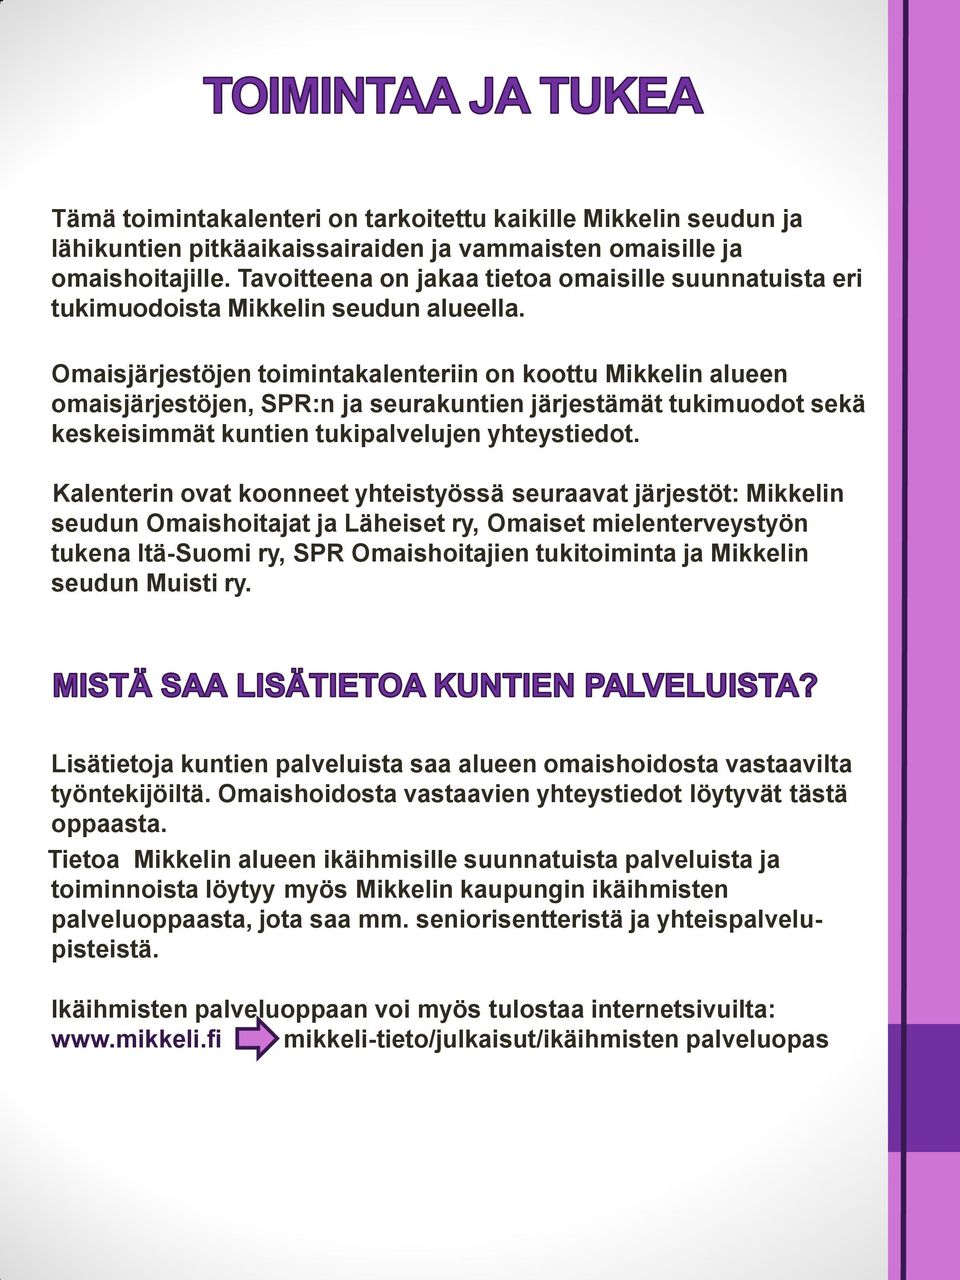 Omaisjärjestöjen toimintakalenteriin on koottu Mikkelin alueen omaisjärjestöjen, SPR:n ja seurakuntien järjestämät tukimuodot sekä keskeisimmät kuntien tukipalvelujen yhteystiedot.